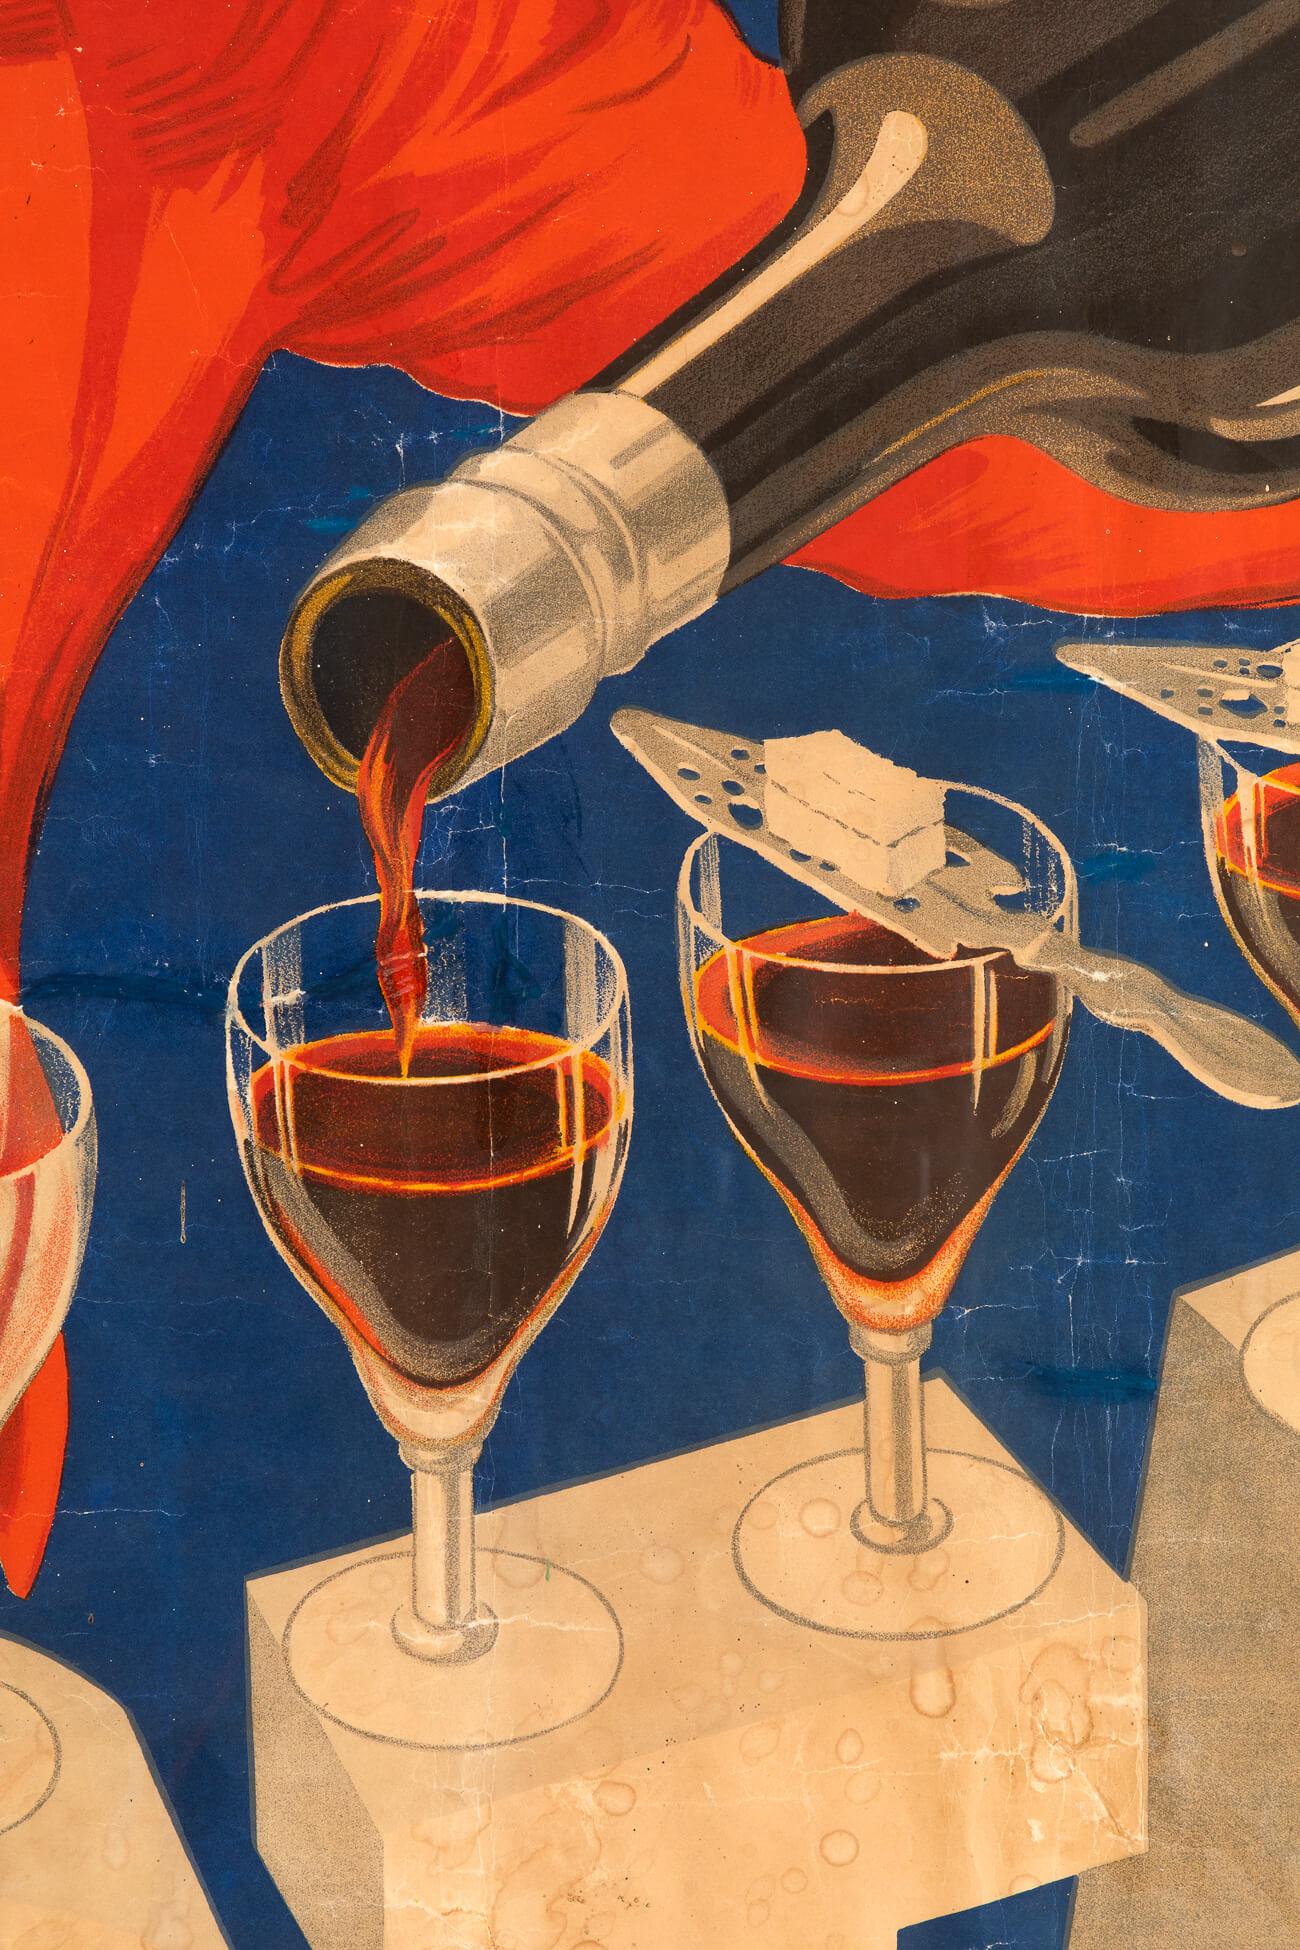 Affiche originale pour l'apéritif français Bitter Secrestat, réalisée par l'artiste français Robys.

Le Secrestat Bitter était un alcool amer populaire mélangé à du sucre et de l'eau, comme le montre le barman sur l'image.

Imprimée par L.Marboeuf,